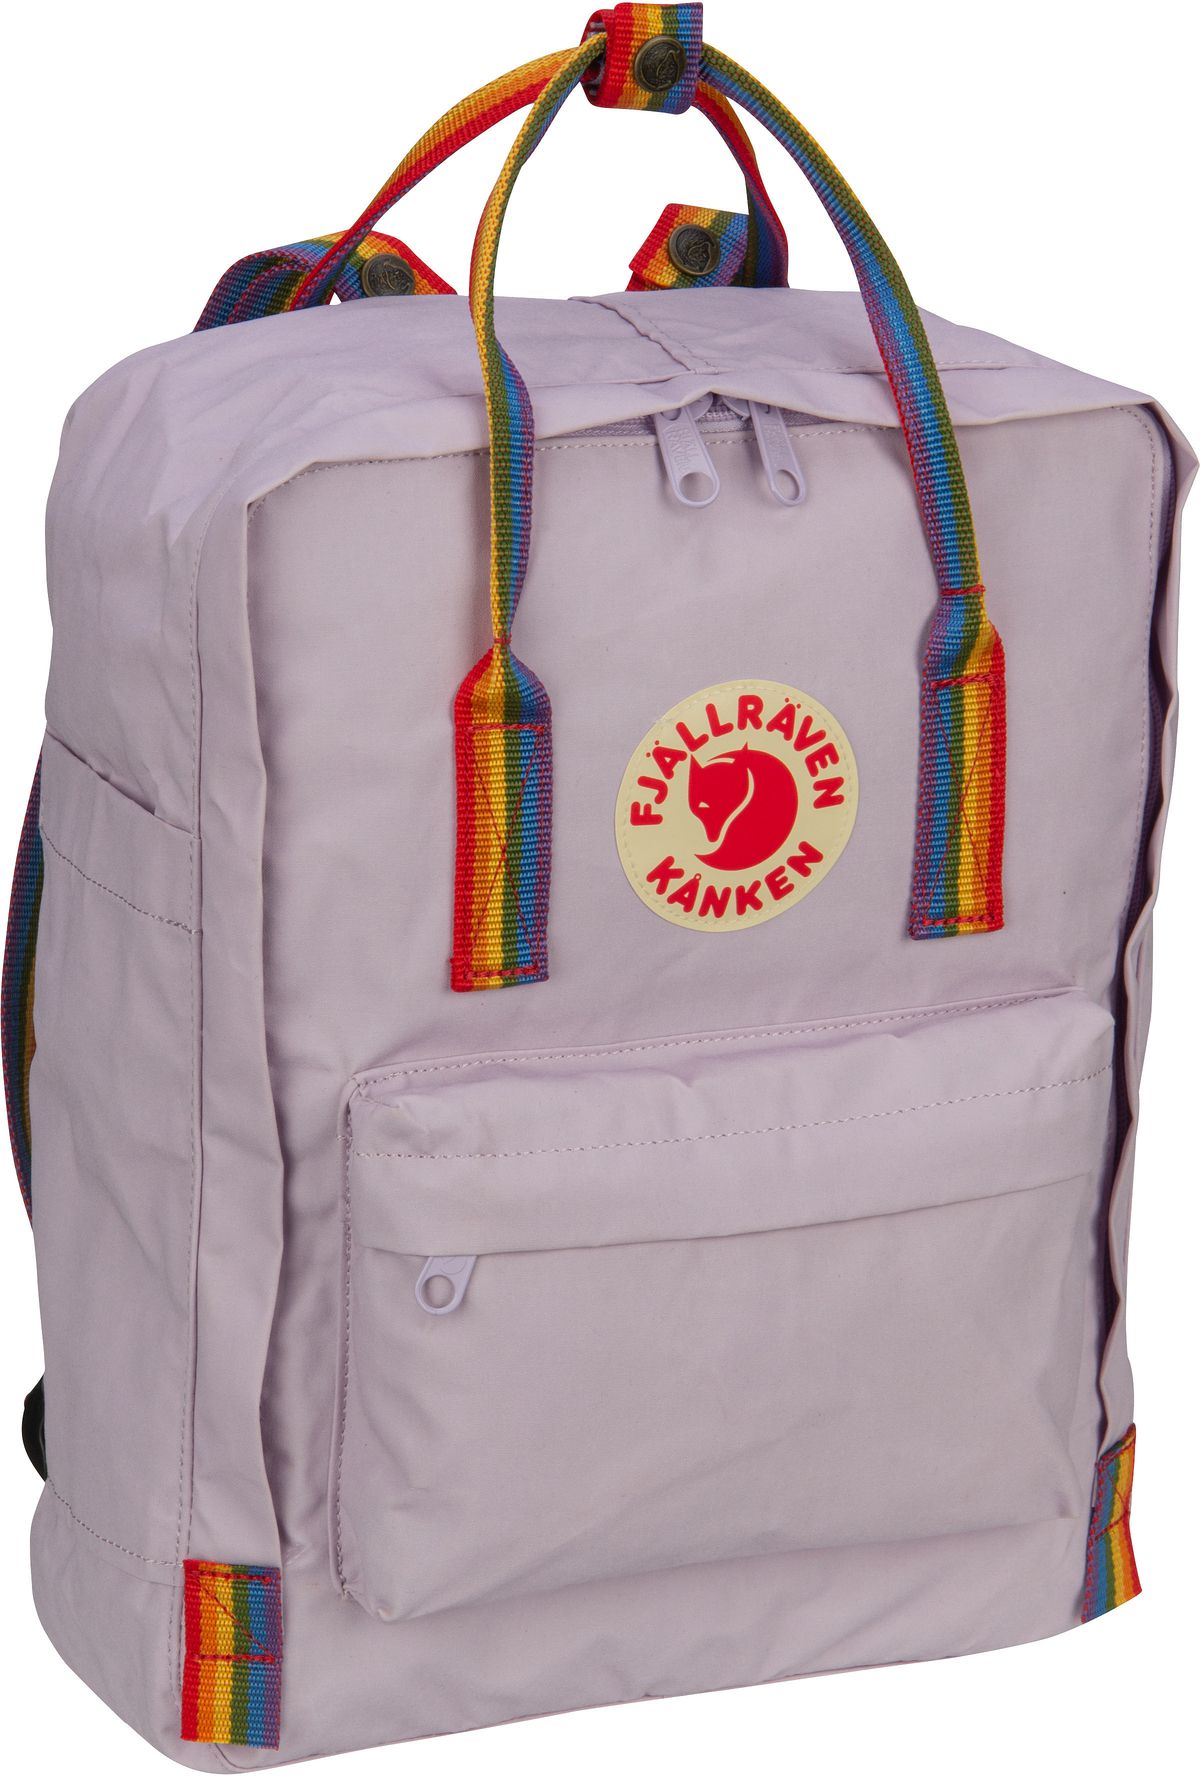 Fjällräven Kanken Rainbow  in Violett (16 Liter), Rucksack / Backpack von Fjällräven